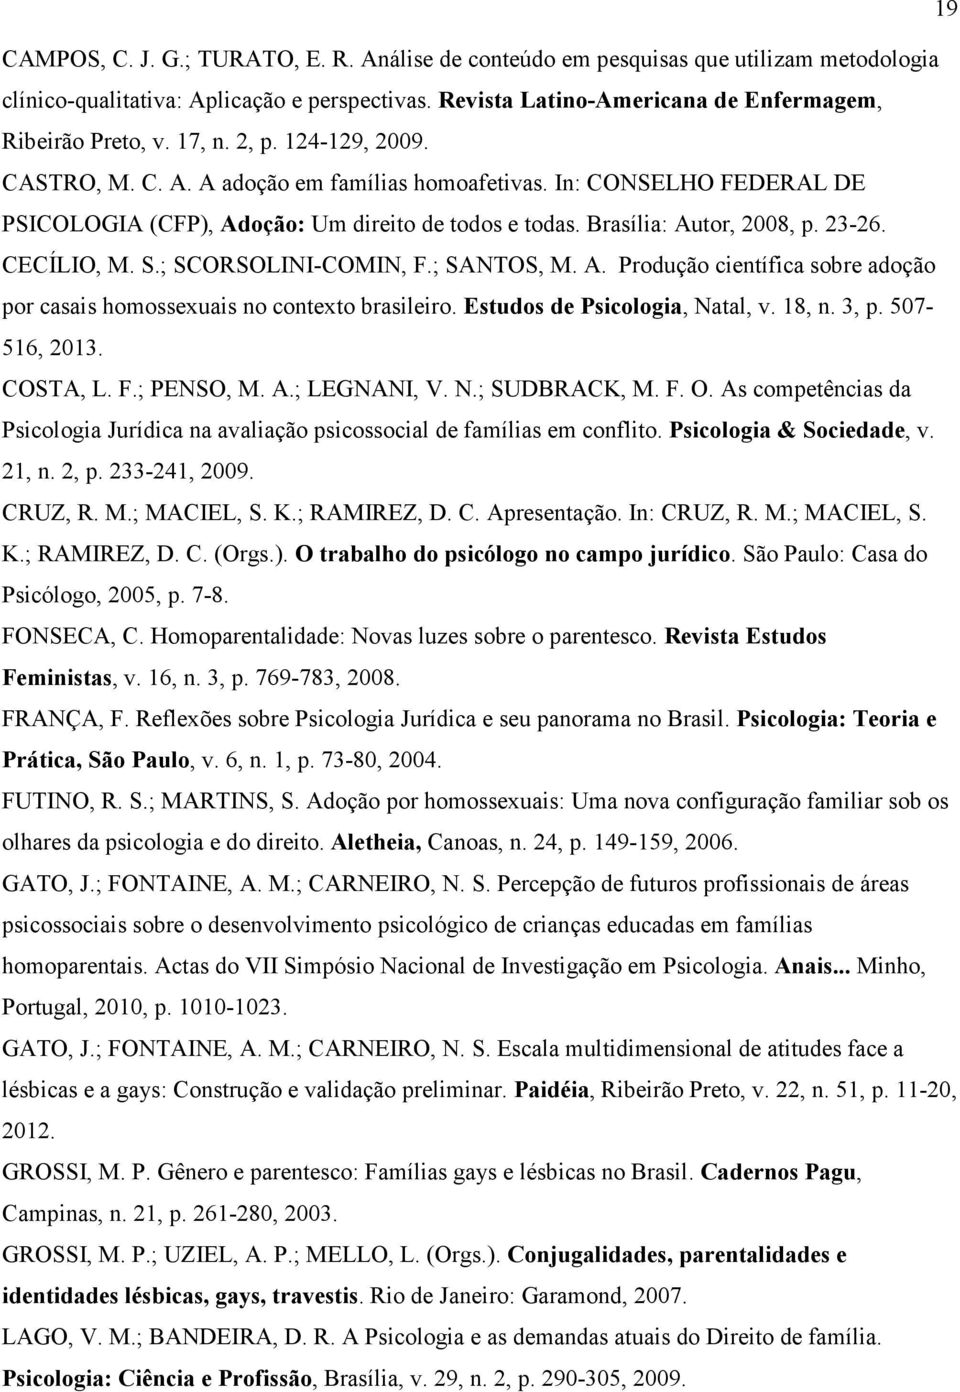 CECÍLIO, M. S.; SCORSOLINI-COMIN, F.; SANTOS, M. A. Produção científica sobre adoção por casais homossexuais no contexto brasileiro. Estudos de Psicologia, Natal, v. 18, n. 3, p. 507-516, 2013.